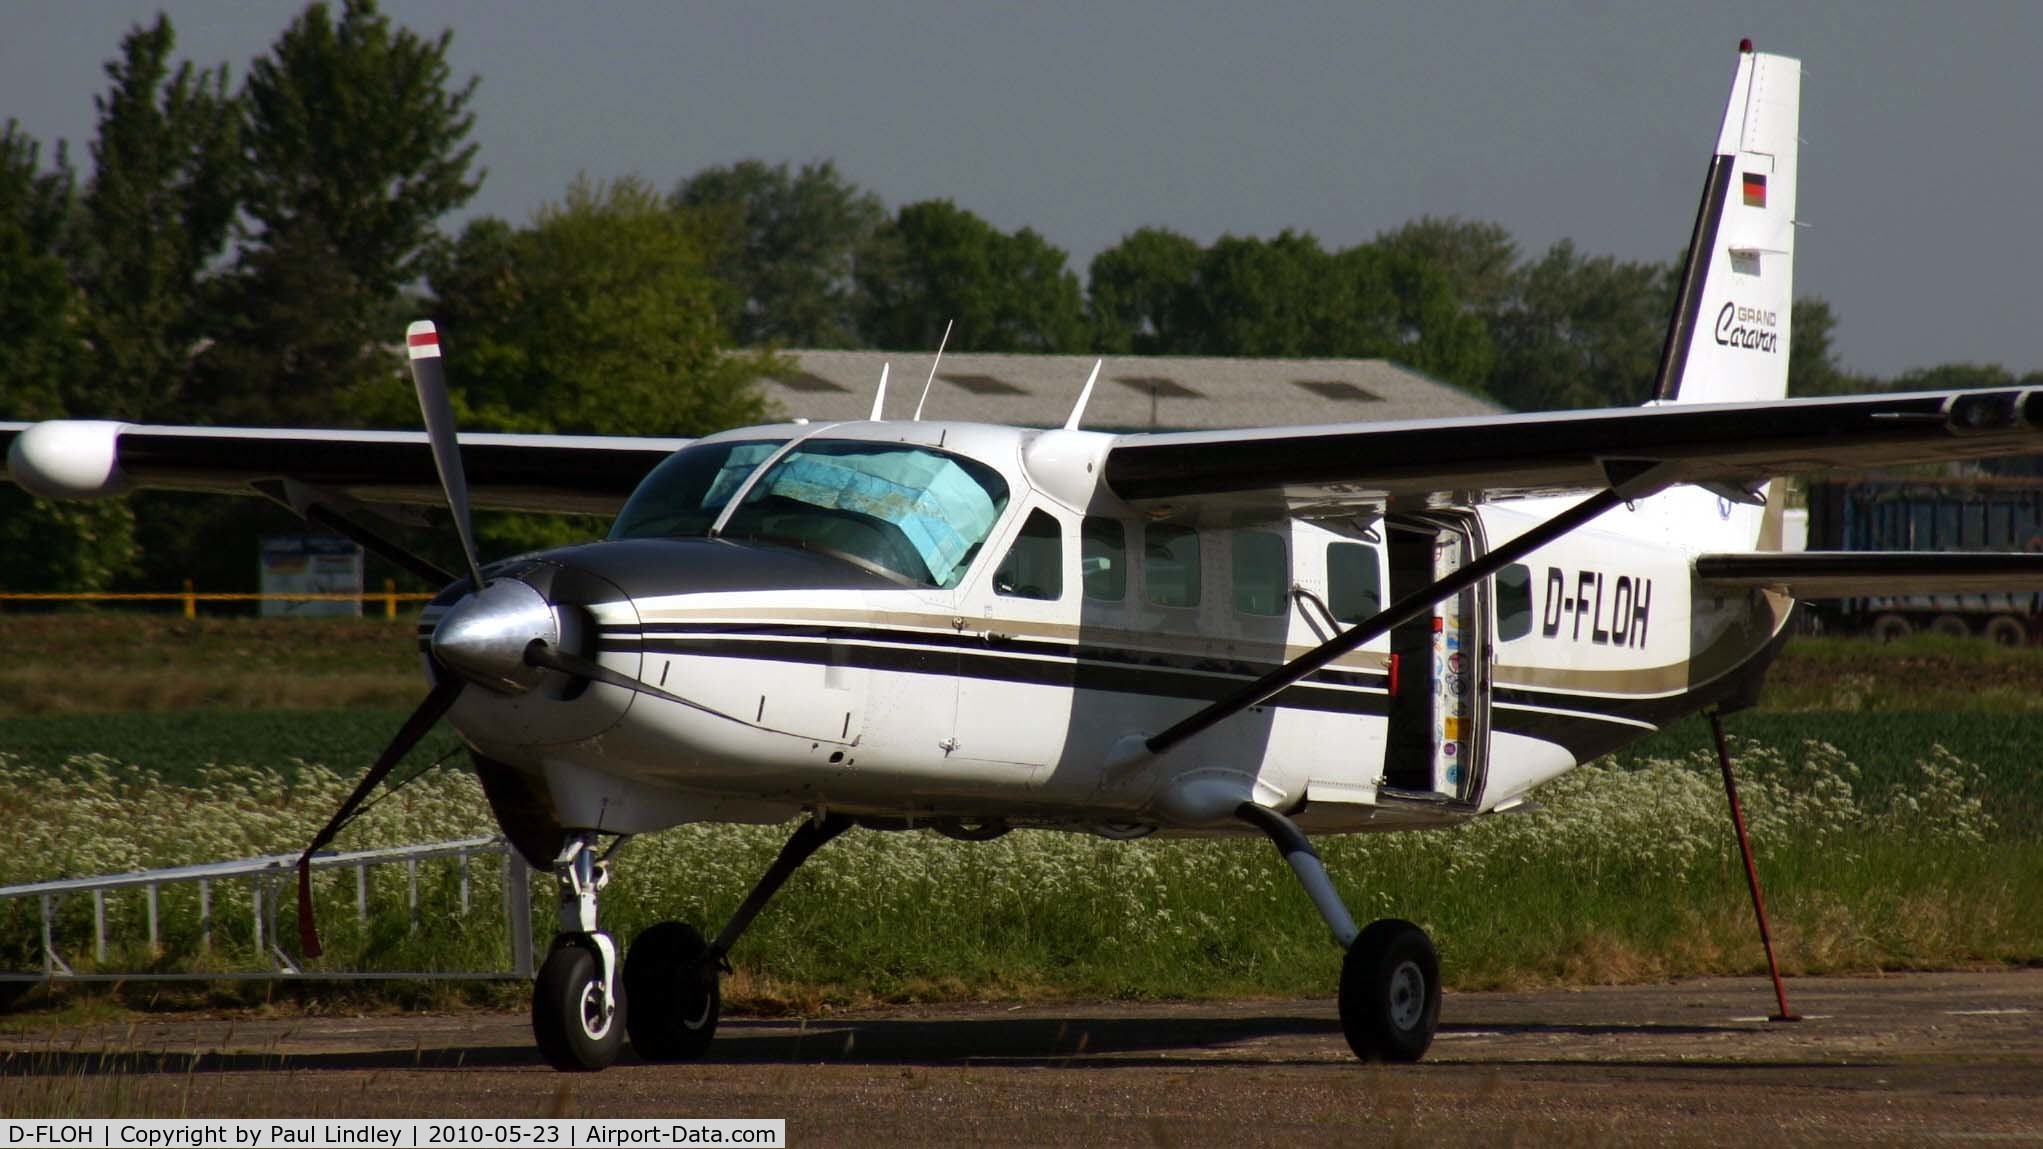 D-FLOH, 1996 Cessna 208B Grand Caravan C/N 208B-0576, Awaiting the Parachuteists at Langar !